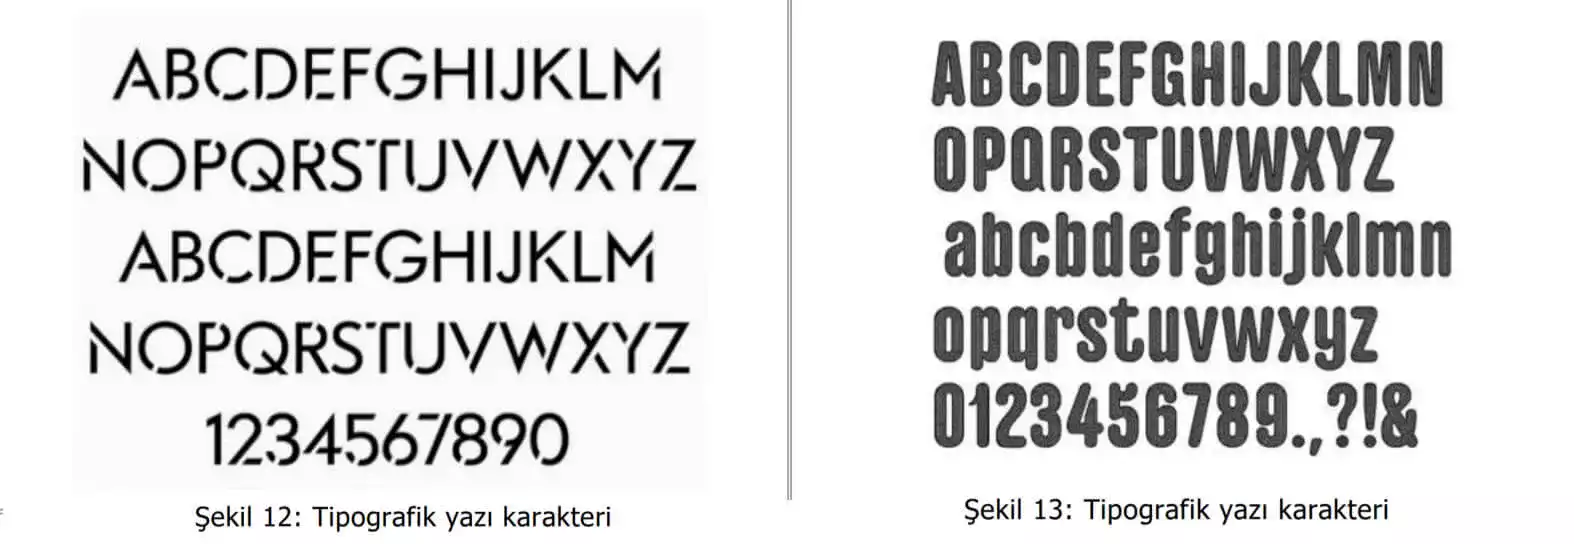 tipografik yazı karakter örnekleri-Beykoz Web Tasarım